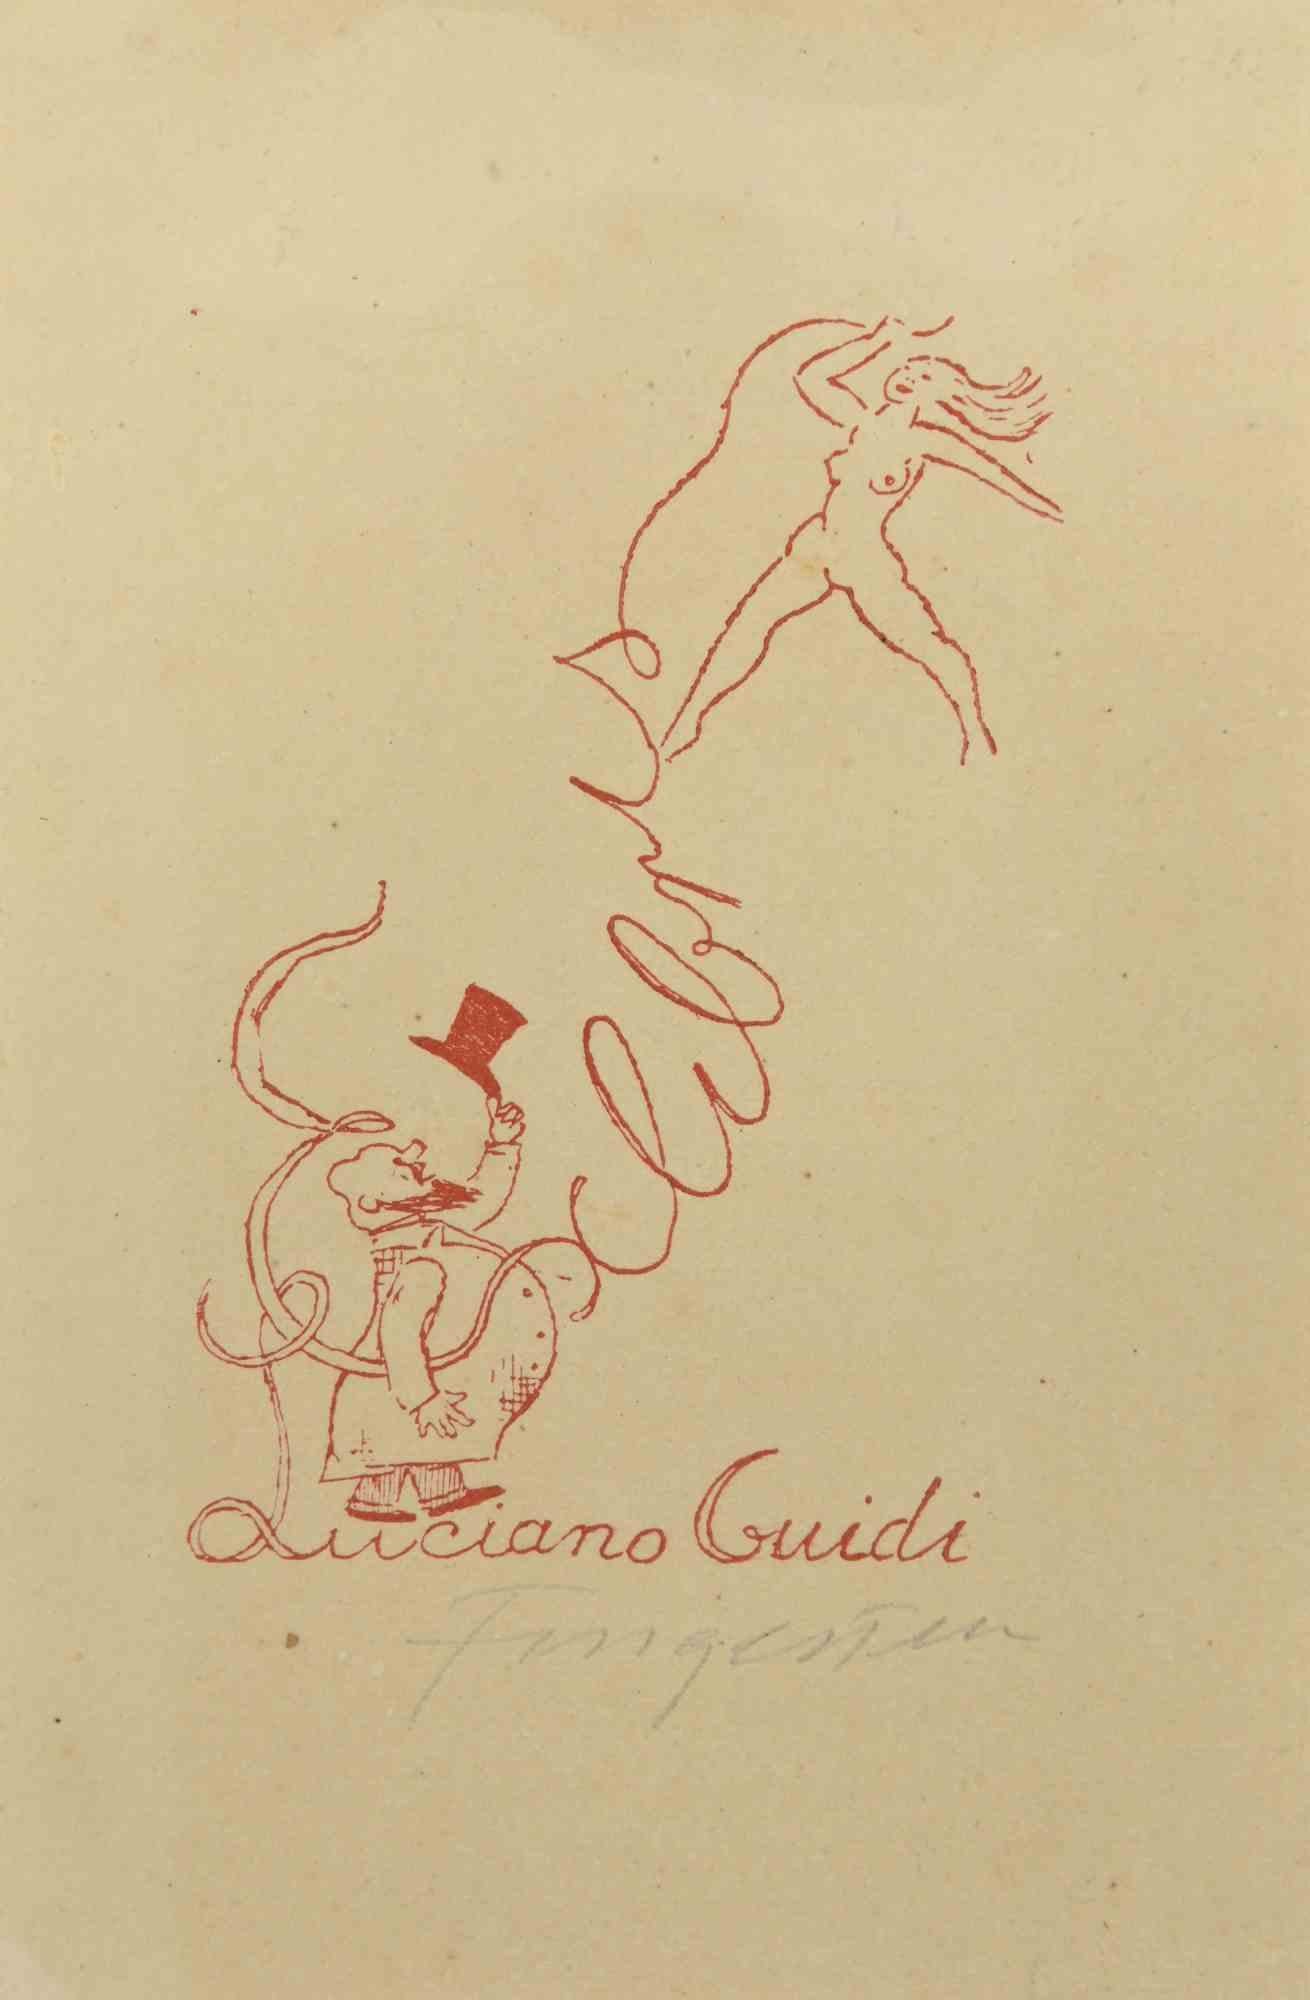 Ex Libris - Luciano Guidi  ist ein farbiger Holzschnitt, der von  Michel Fingesten.

Handsigniert am unteren rechten Rand.

Gute Bedingungen.

Michel Fingesten (1884 - 1943) war ein tschechischer Maler und Graveur jüdischer Herkunft. Er gilt als